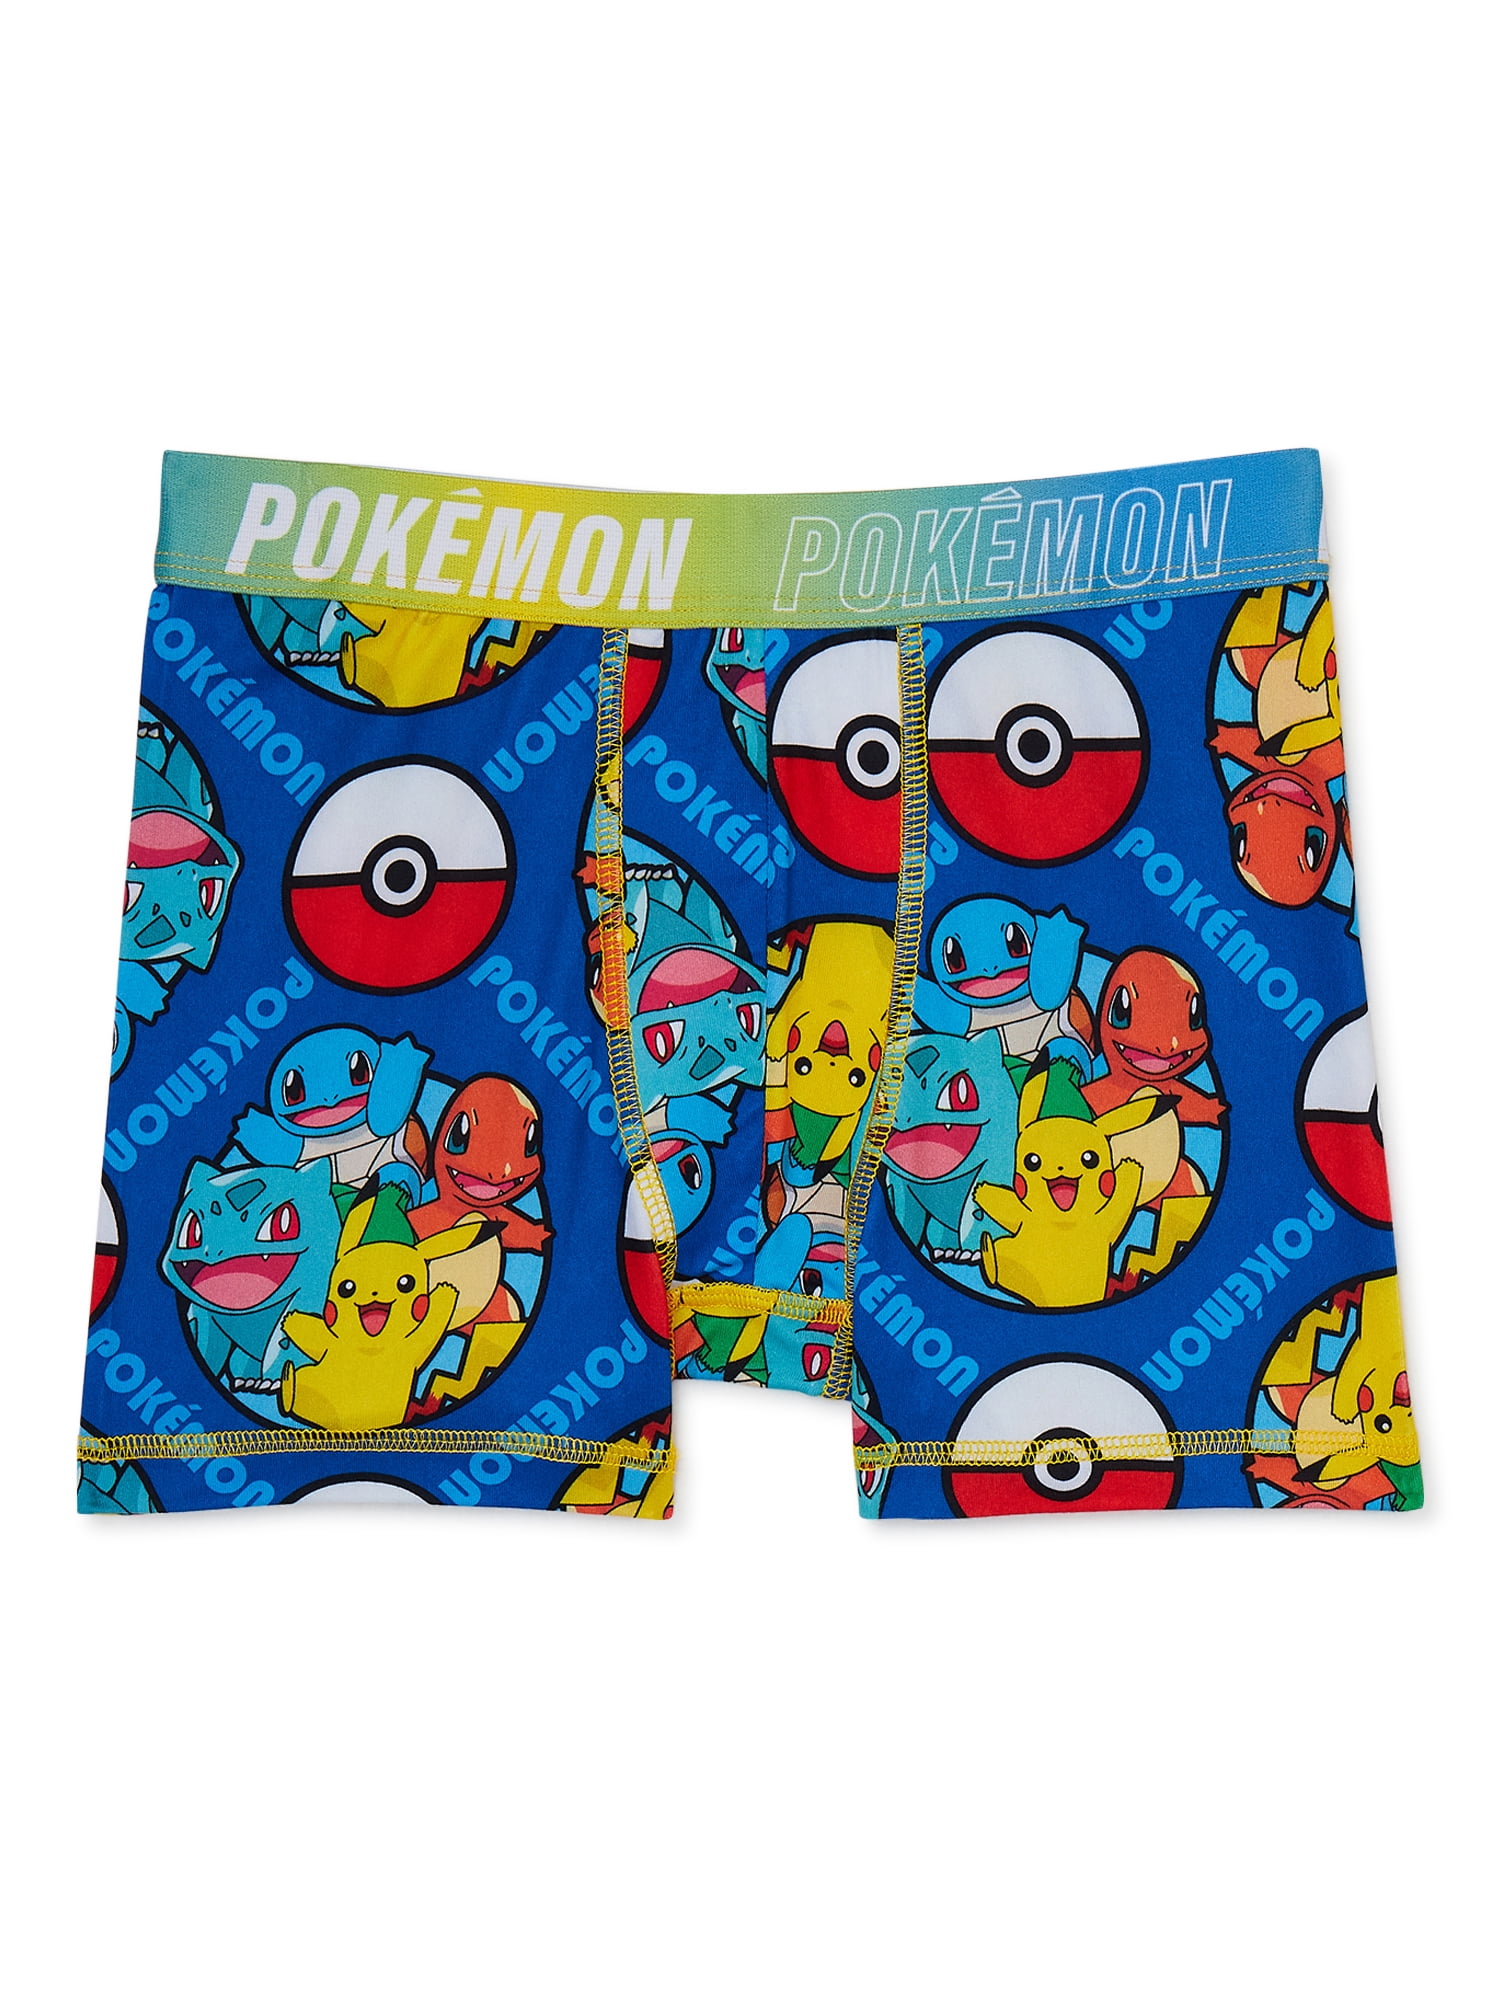 Pokémon Boy's Boxer Briefs Underwear, 4-pack, Sizes 4-14 